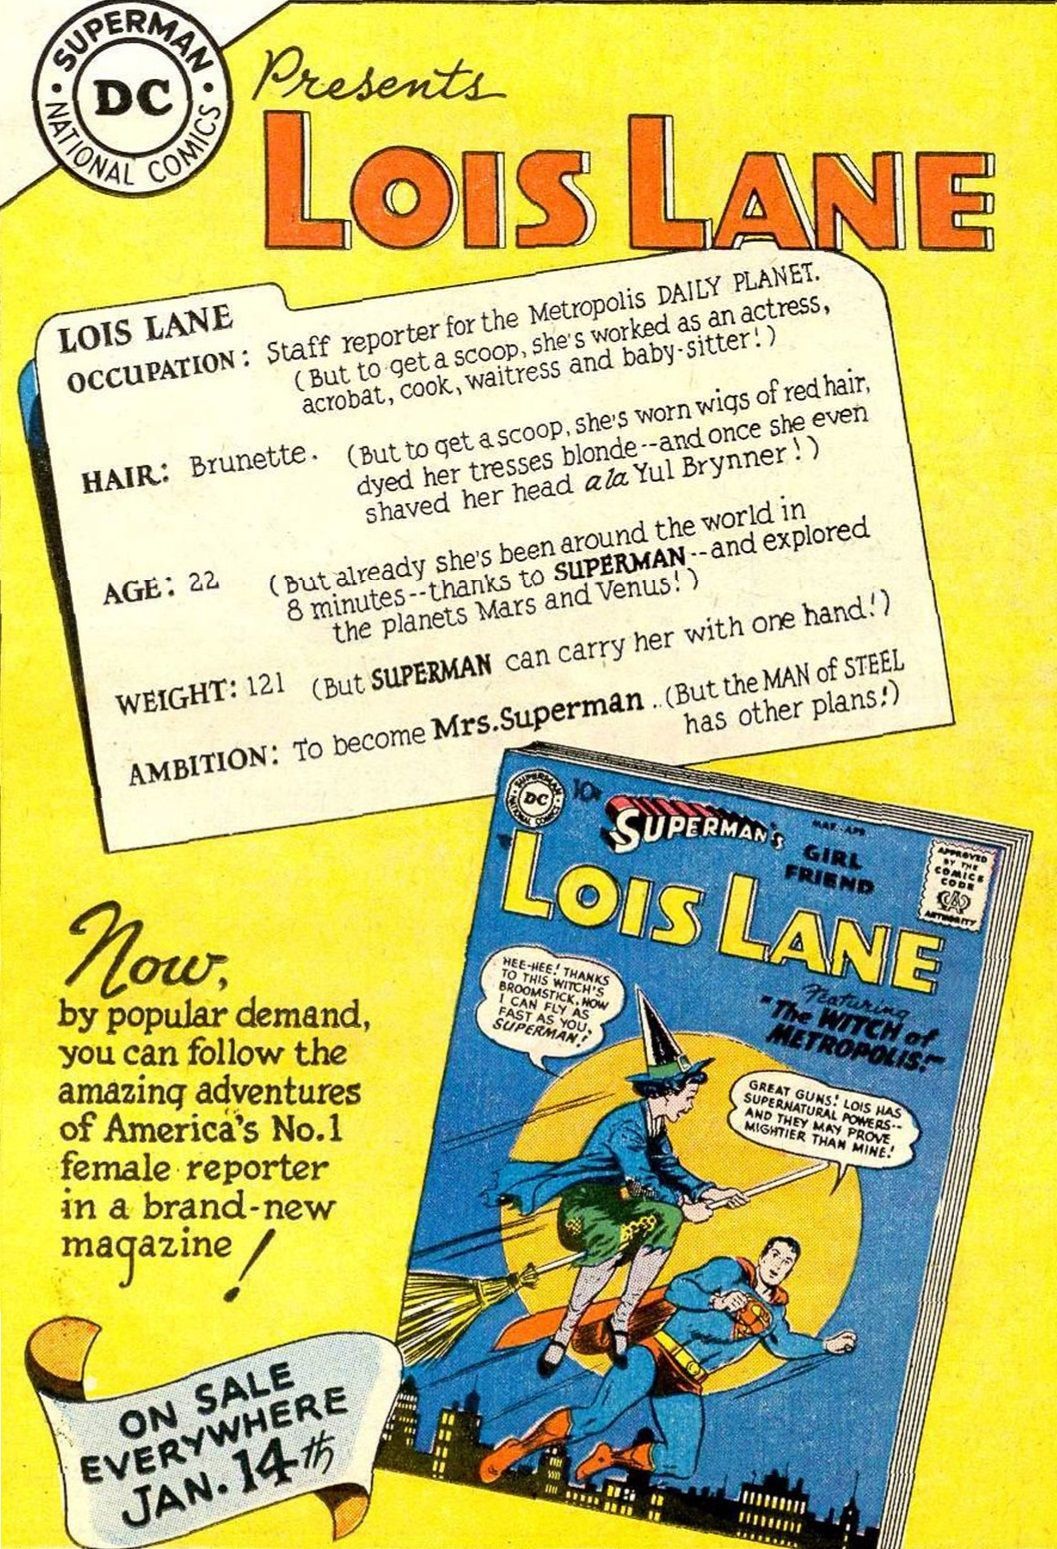 Kas vyresnis, Supermenas ar Loisas Lane'as? (Tai sudėtinga)